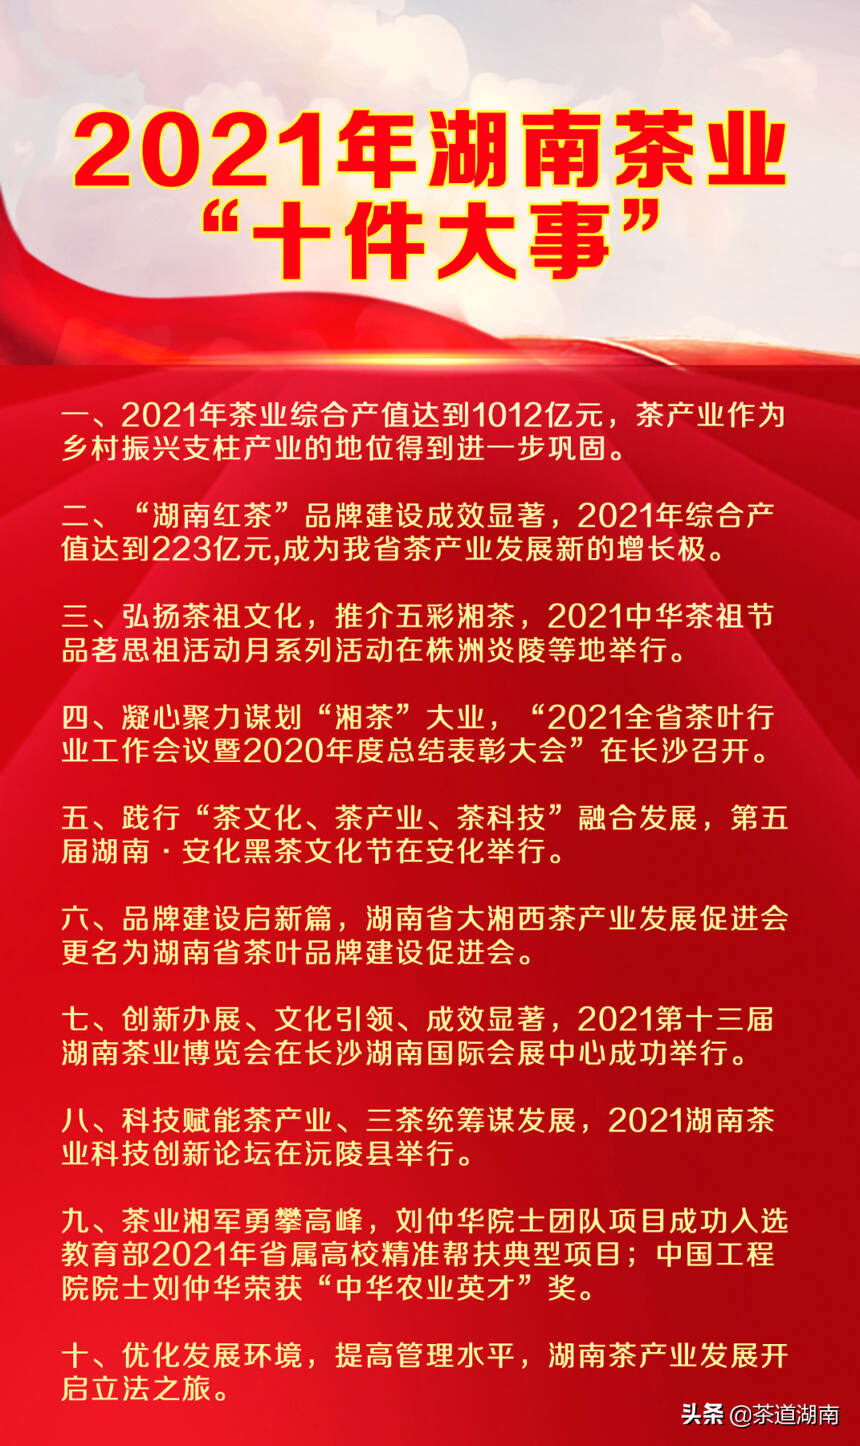 2021年湖南茶业“十件大事”发布会成功举行